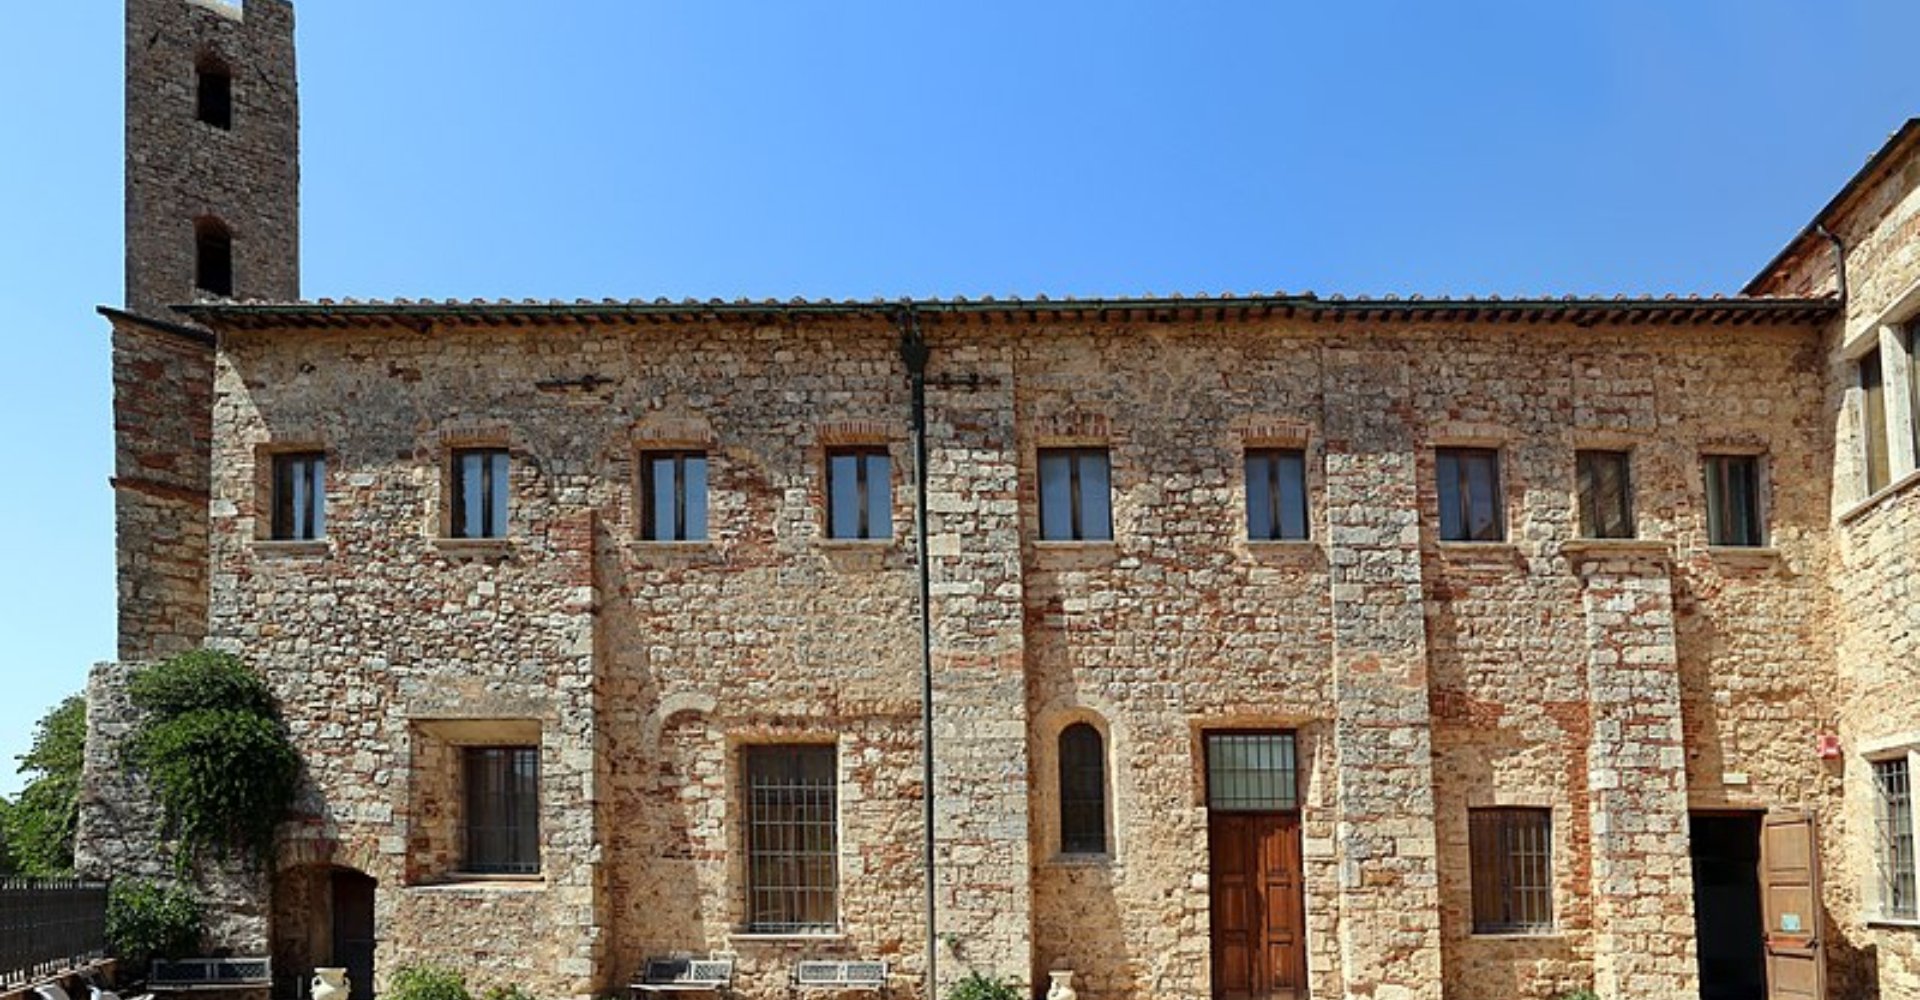 Museum of San Pietro all'Orto